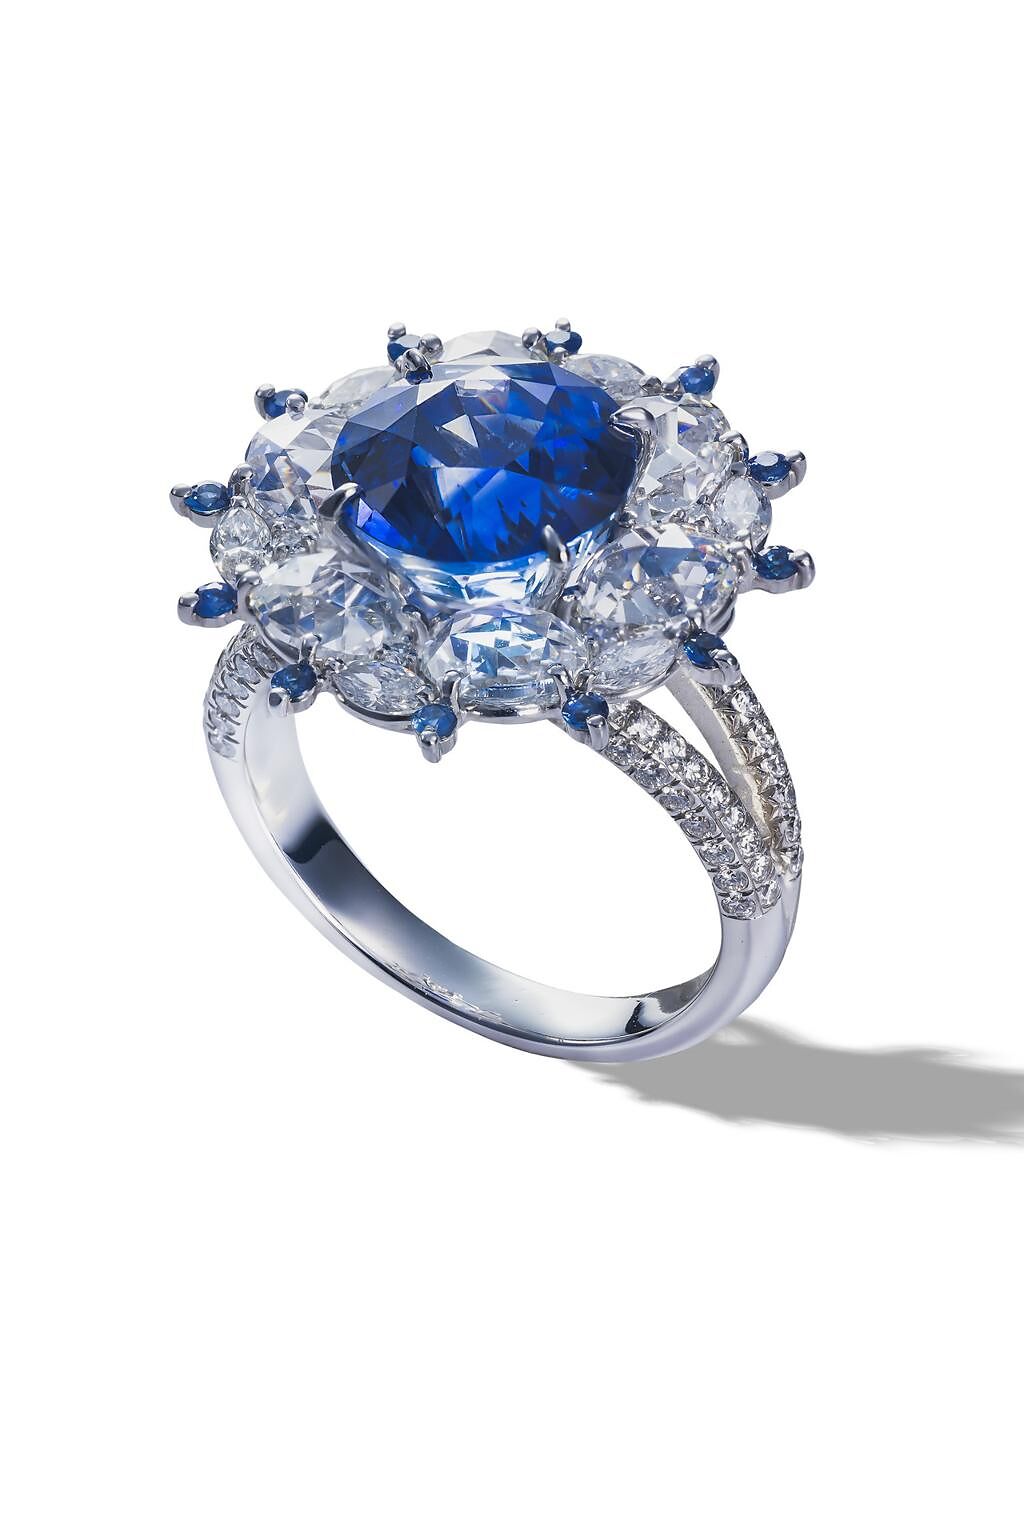 DAMIANI Absolute藍寶石戒指，300萬元。（DAMIANI提供）